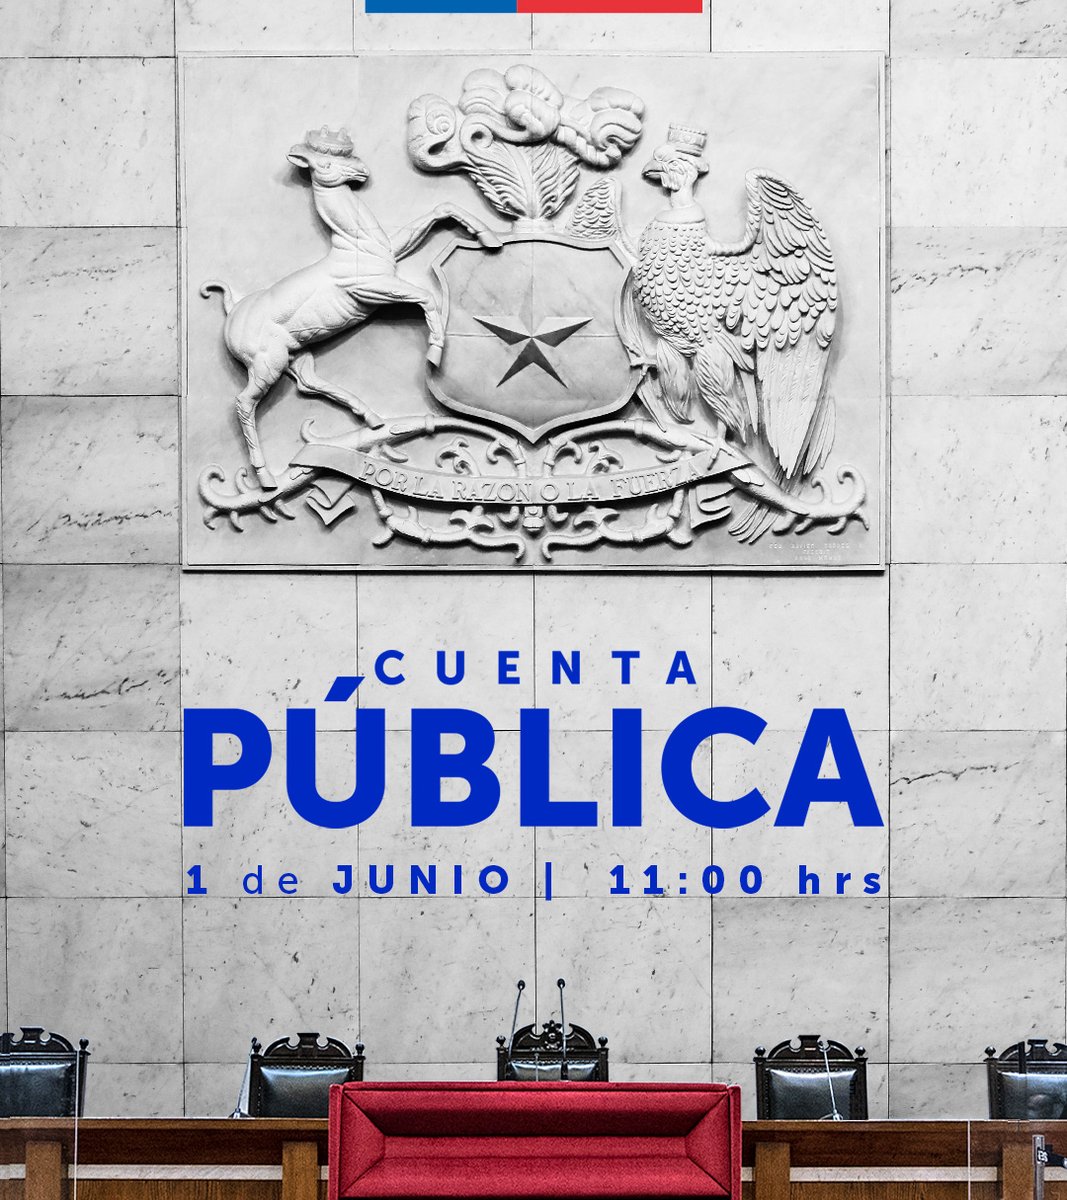 Este sábado 1 de junio a las 11:00 horas, sigue la #CuentaPública2024 del Presidente de la República @GabrielBoric, desde el Salón de Honor del Congreso Nacional en Valparaíso.